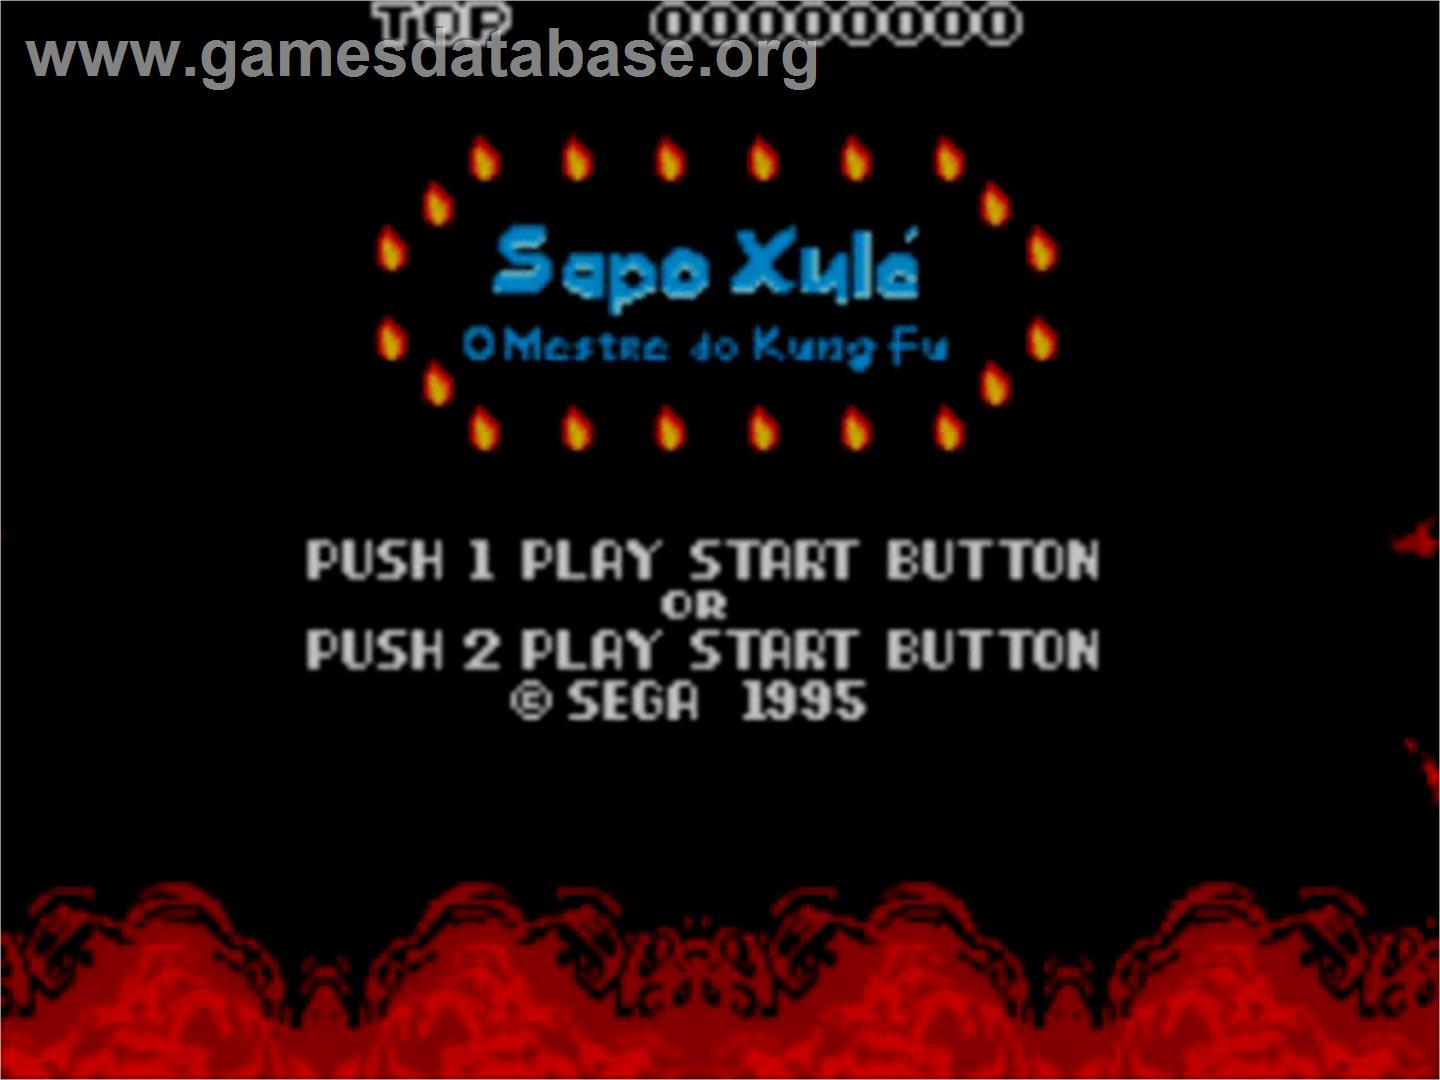 Sapo Xulé: O Mestre do Kung Fu - Sega Master System - Artwork - Title Screen